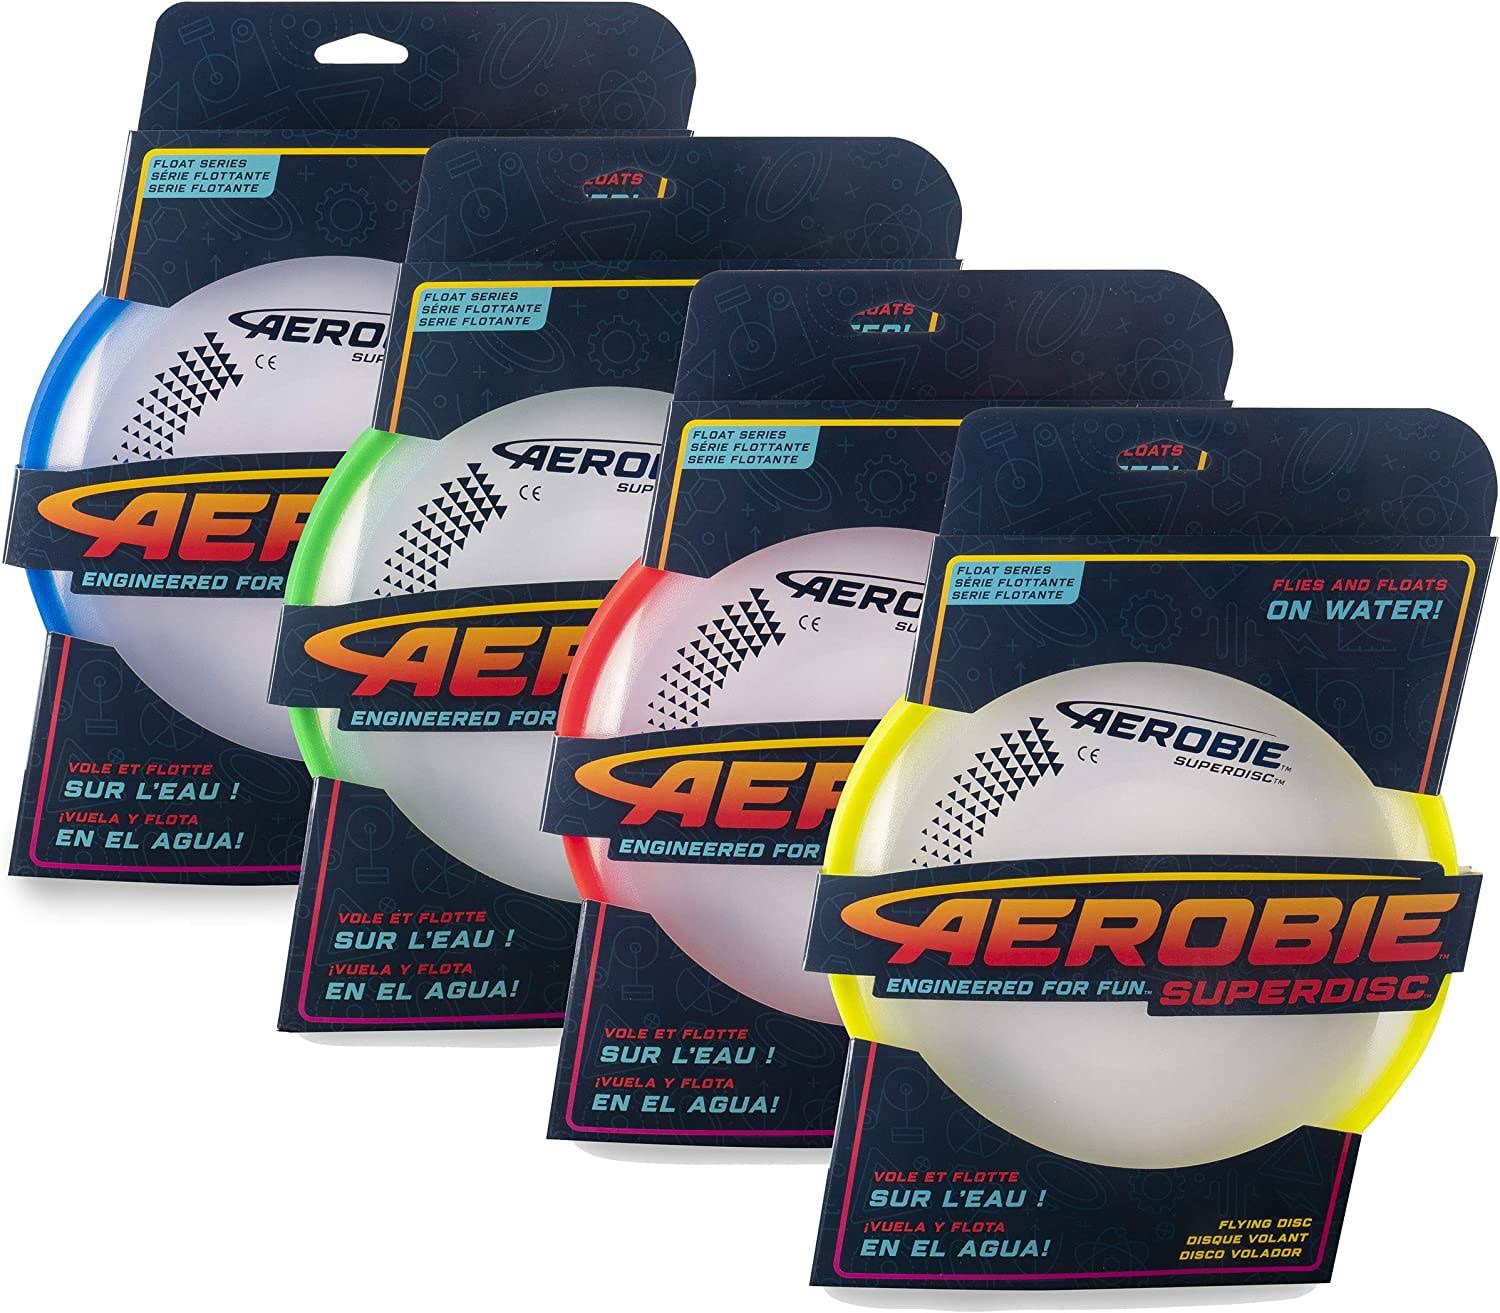 Aerobie Flying Discs